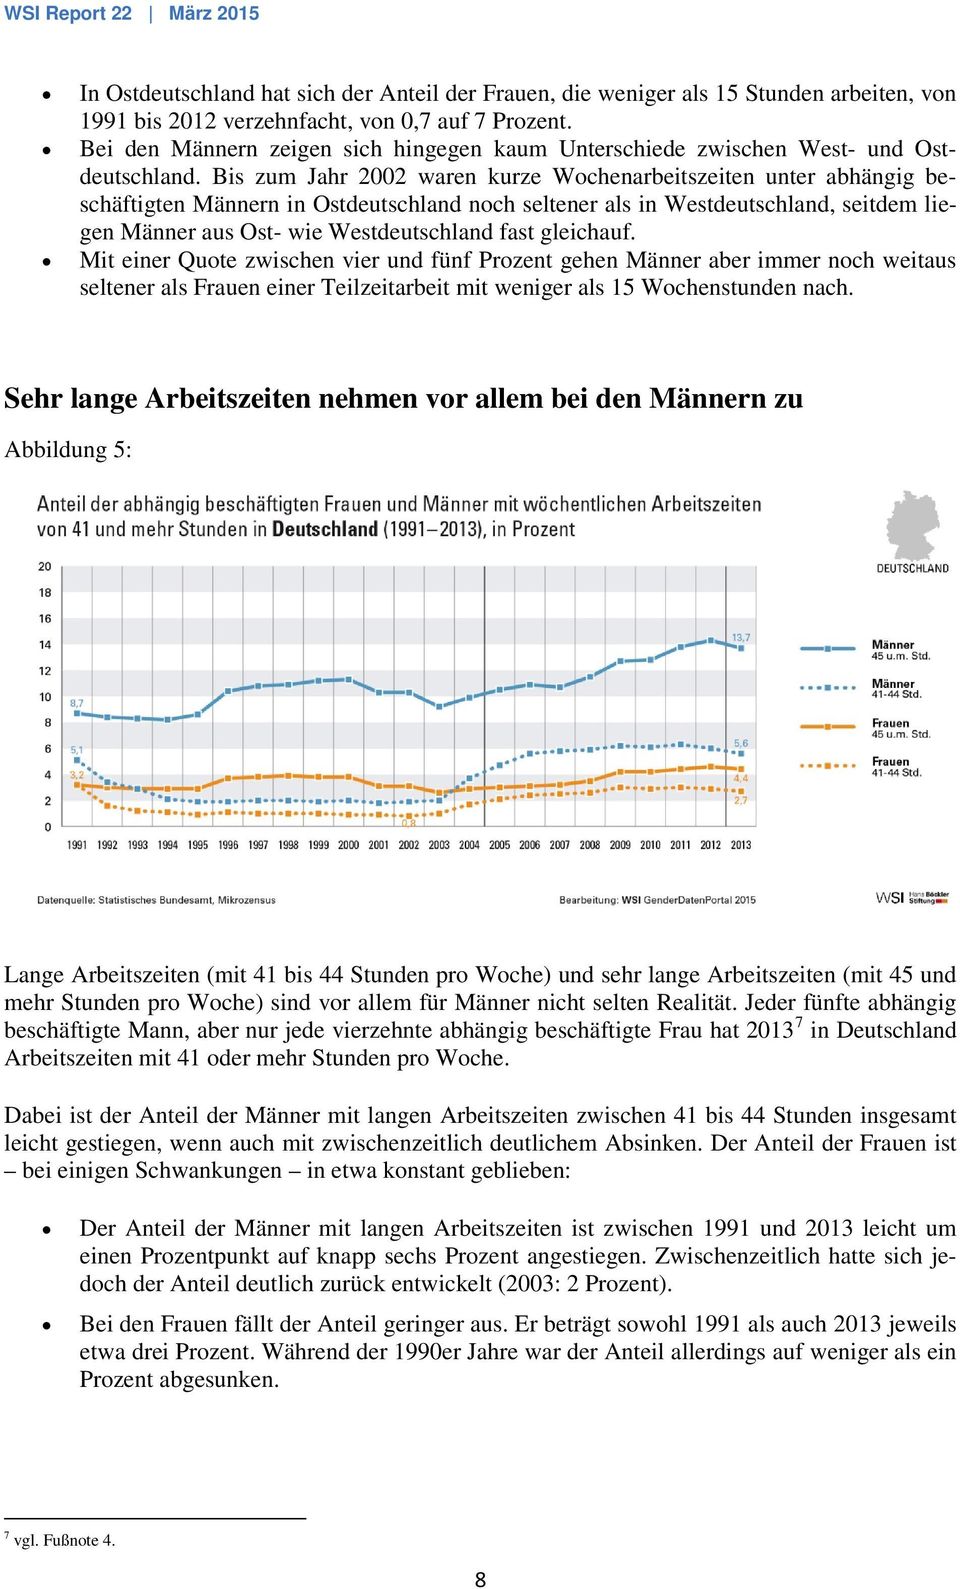 Bis zum Jahr 2002 waren kurze Wochenarbeitszeiten unter abhängig beschäftigten Männern in Ostdeutschland noch seltener als in Westdeutschland, seitdem liegen Männer aus Ost- wie Westdeutschland fast